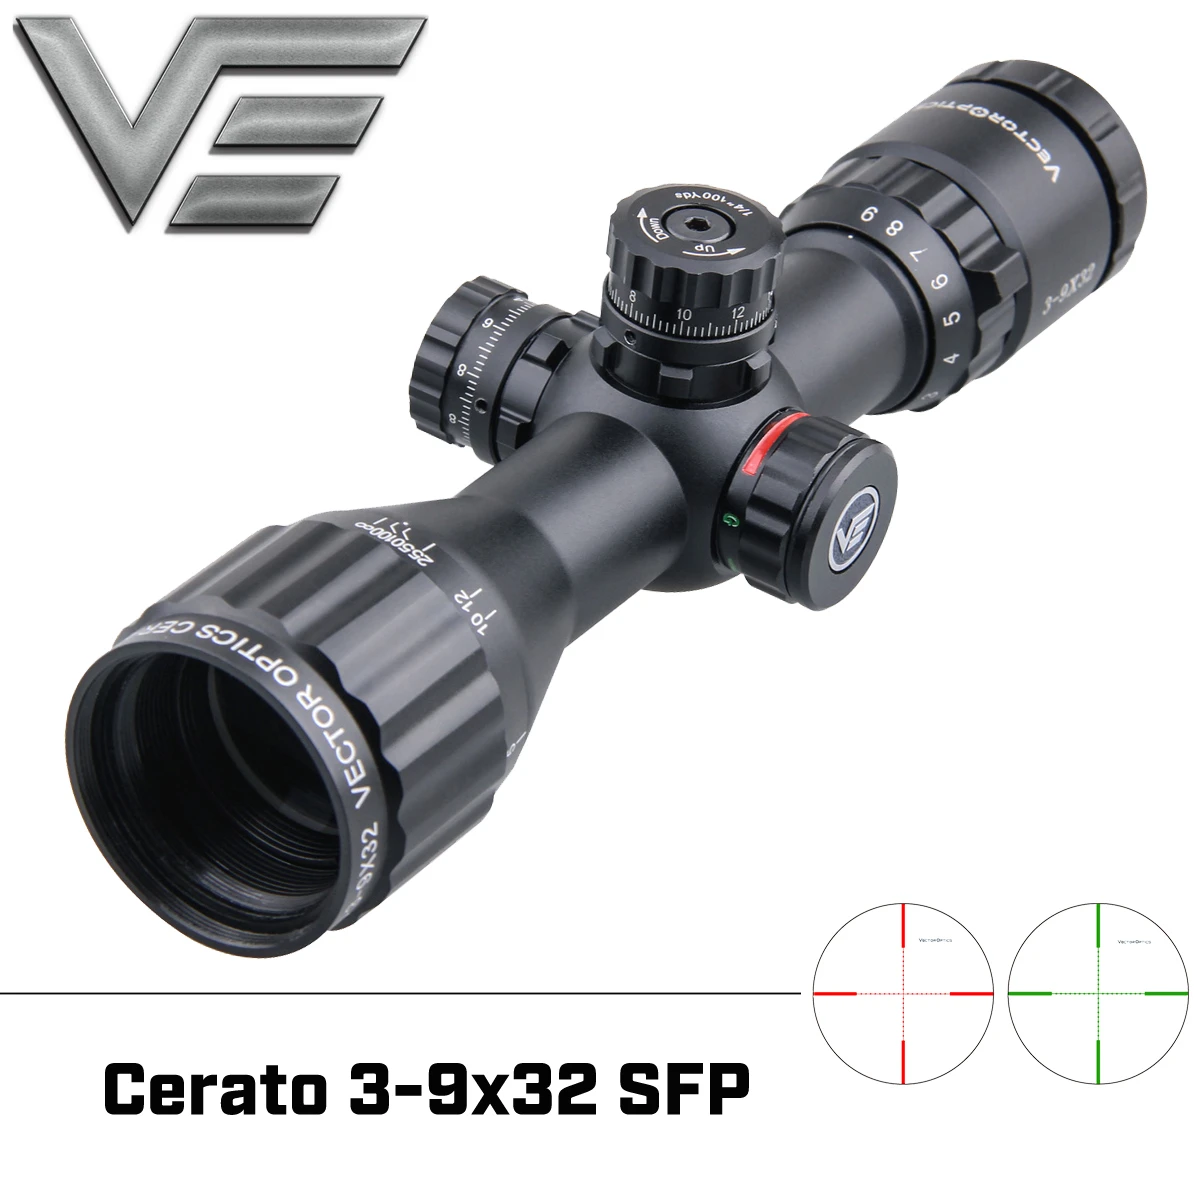 Векторная оптика Cerato 3-9x32 AOE компактный прицел для винтовки объективный объектив фокусировка освещение стопор башни Airgun Scope